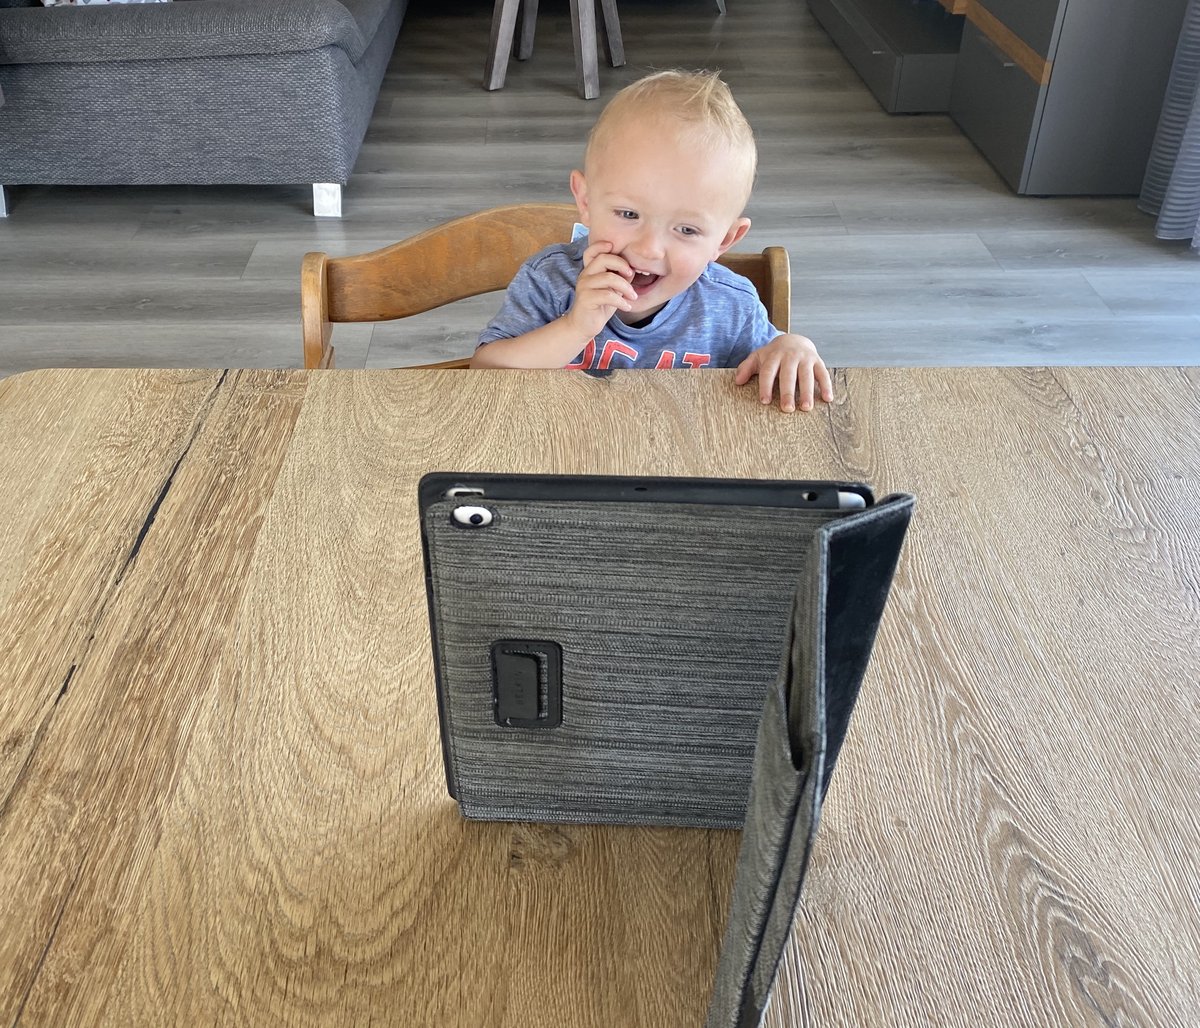 Baby lachend auf einem Hochstuhl. Es schaut auf den Bildschirm eines iPads.